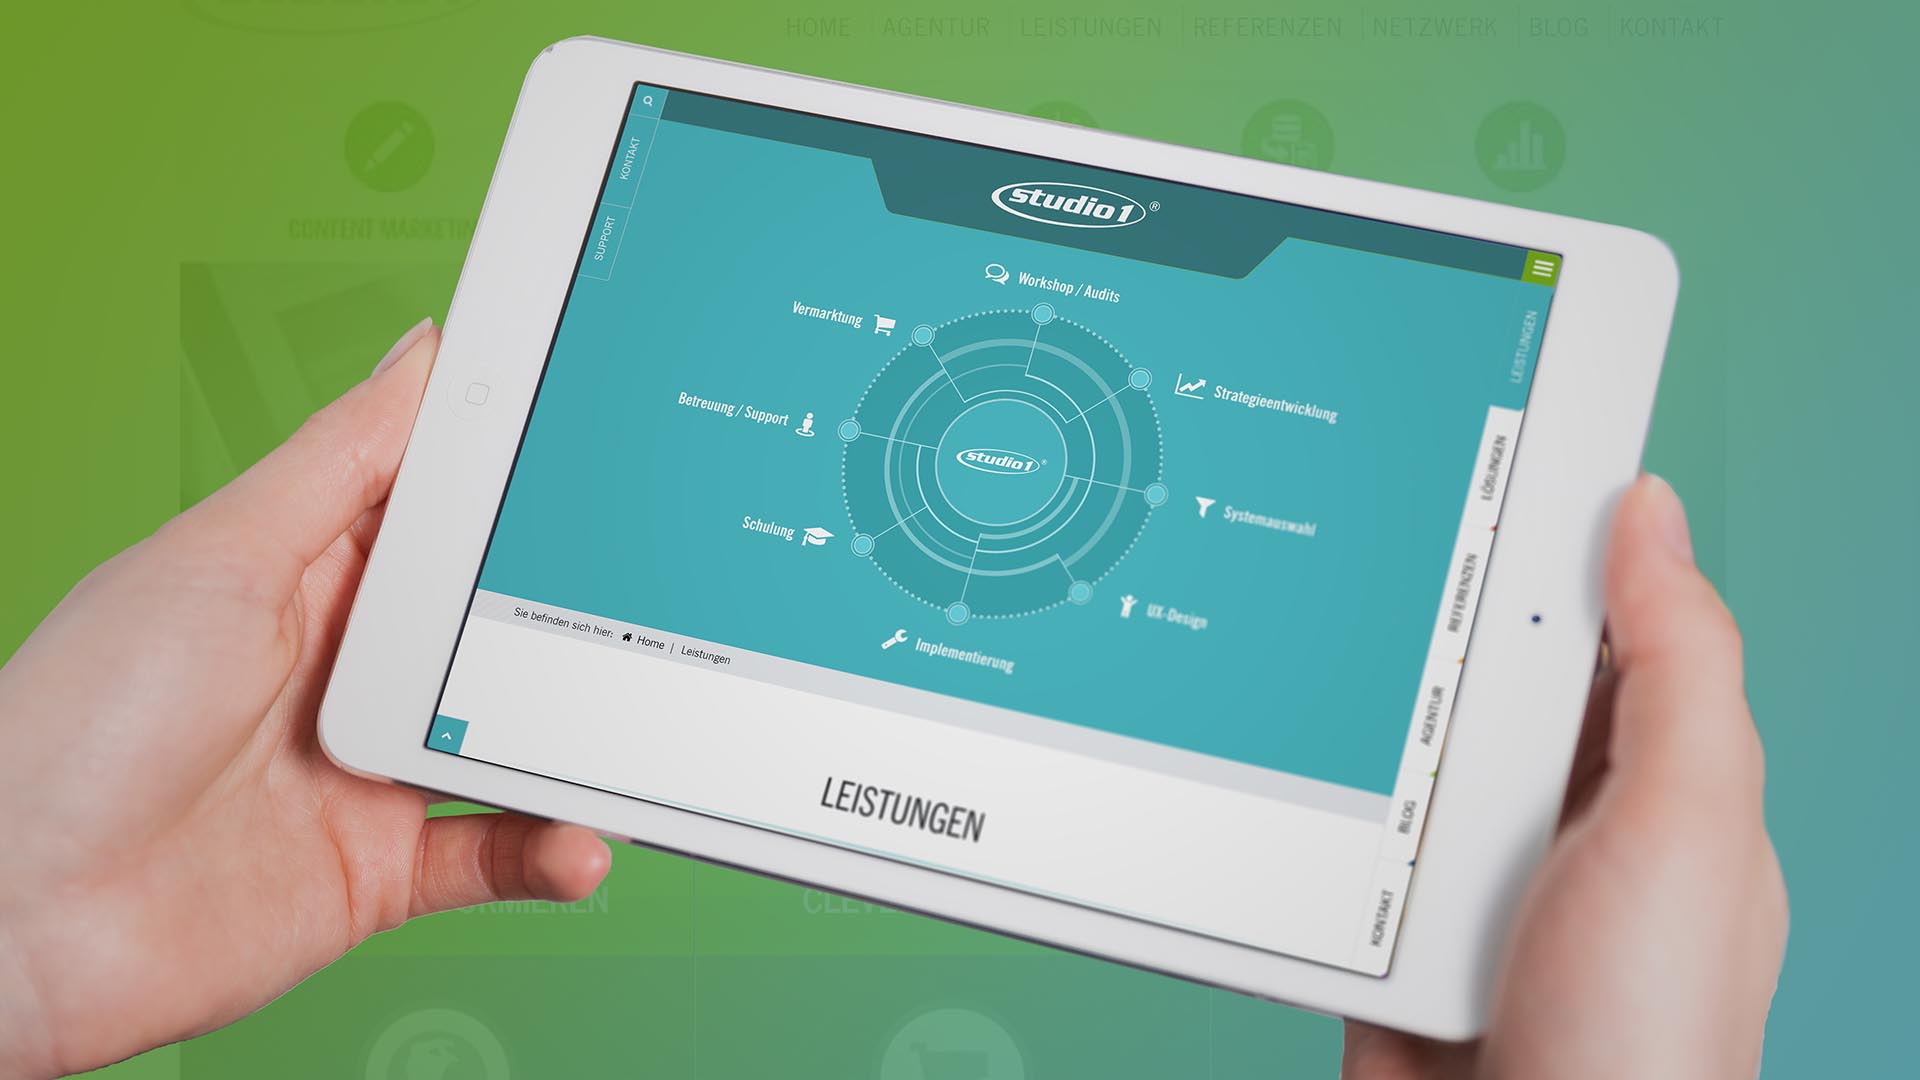 Studio1® Kommunikation GmbH - Tablet zeigt Website mit Leistungsangebot